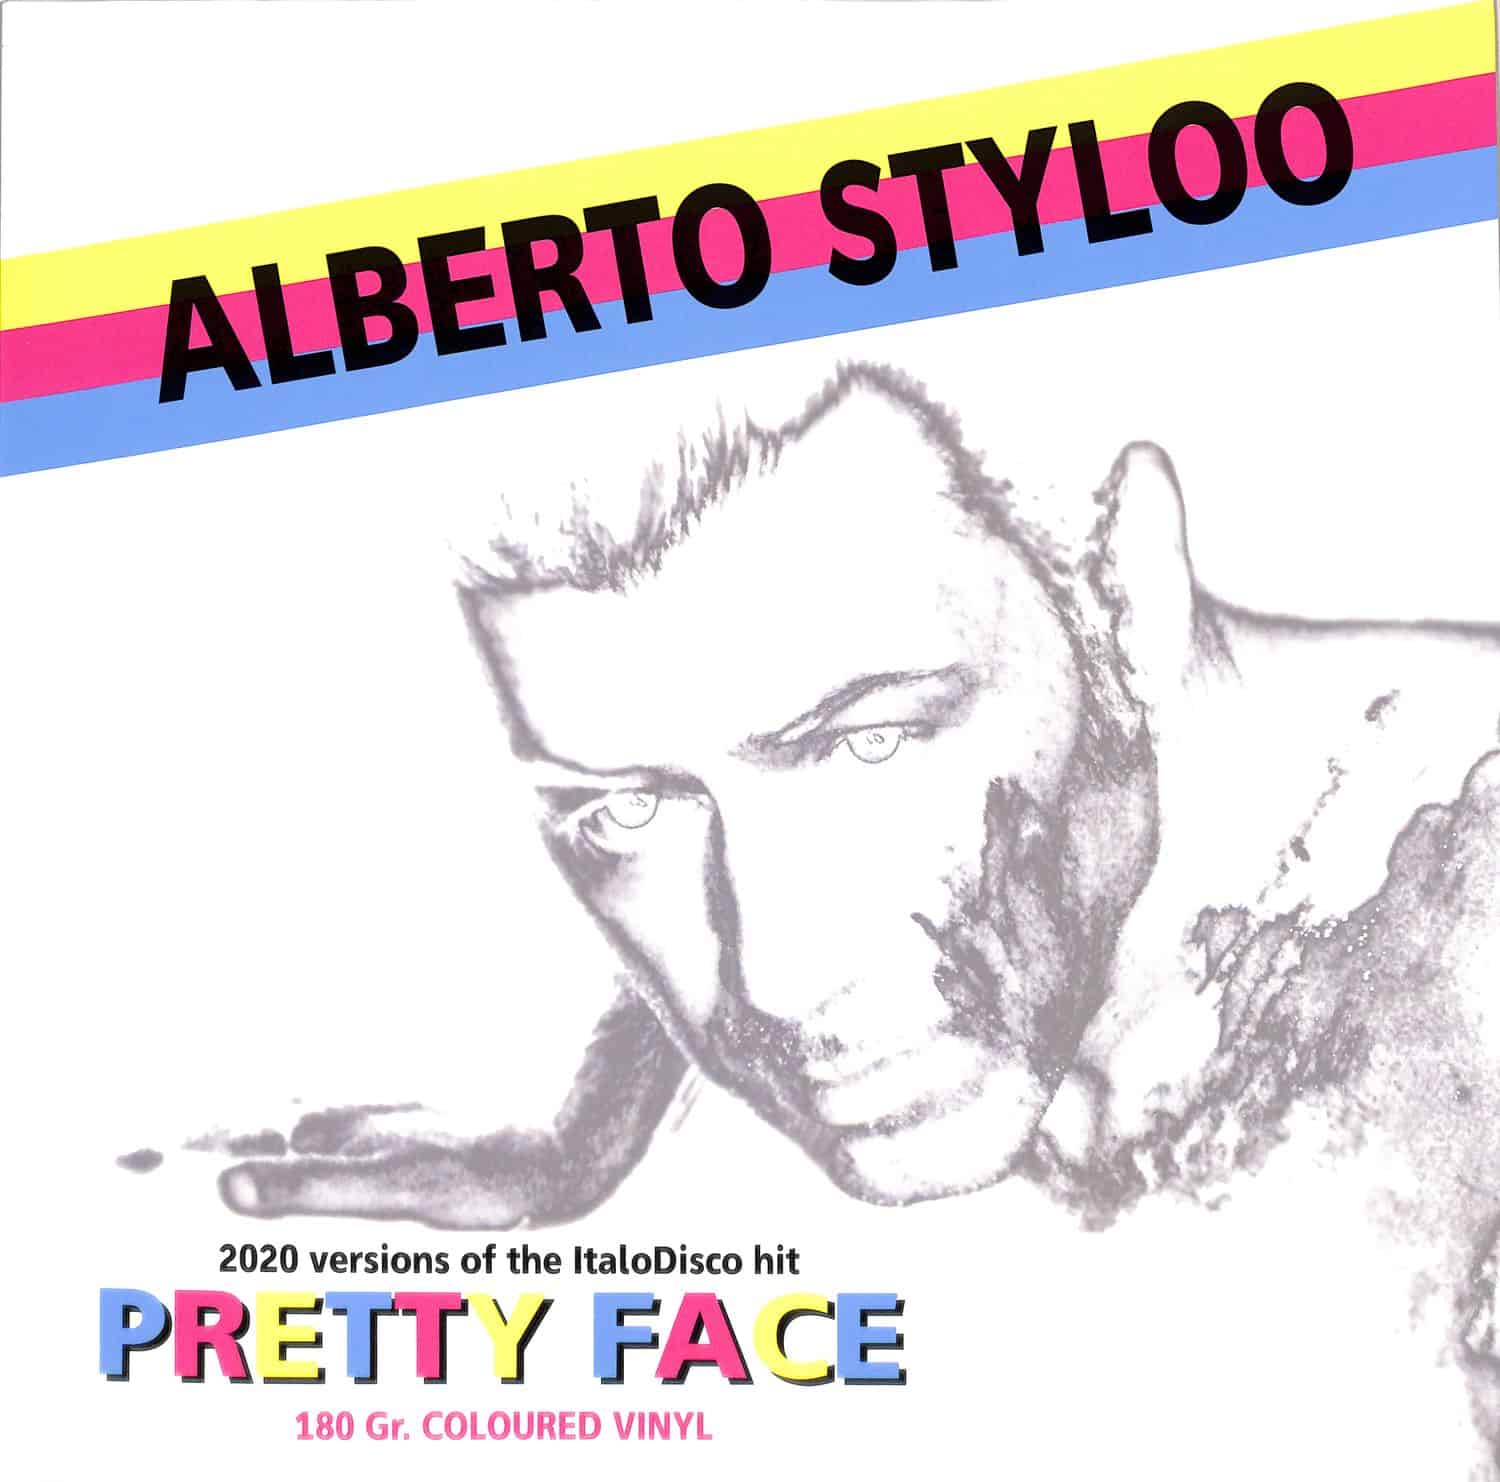 Alberto Styloo - PRETTY FACE 